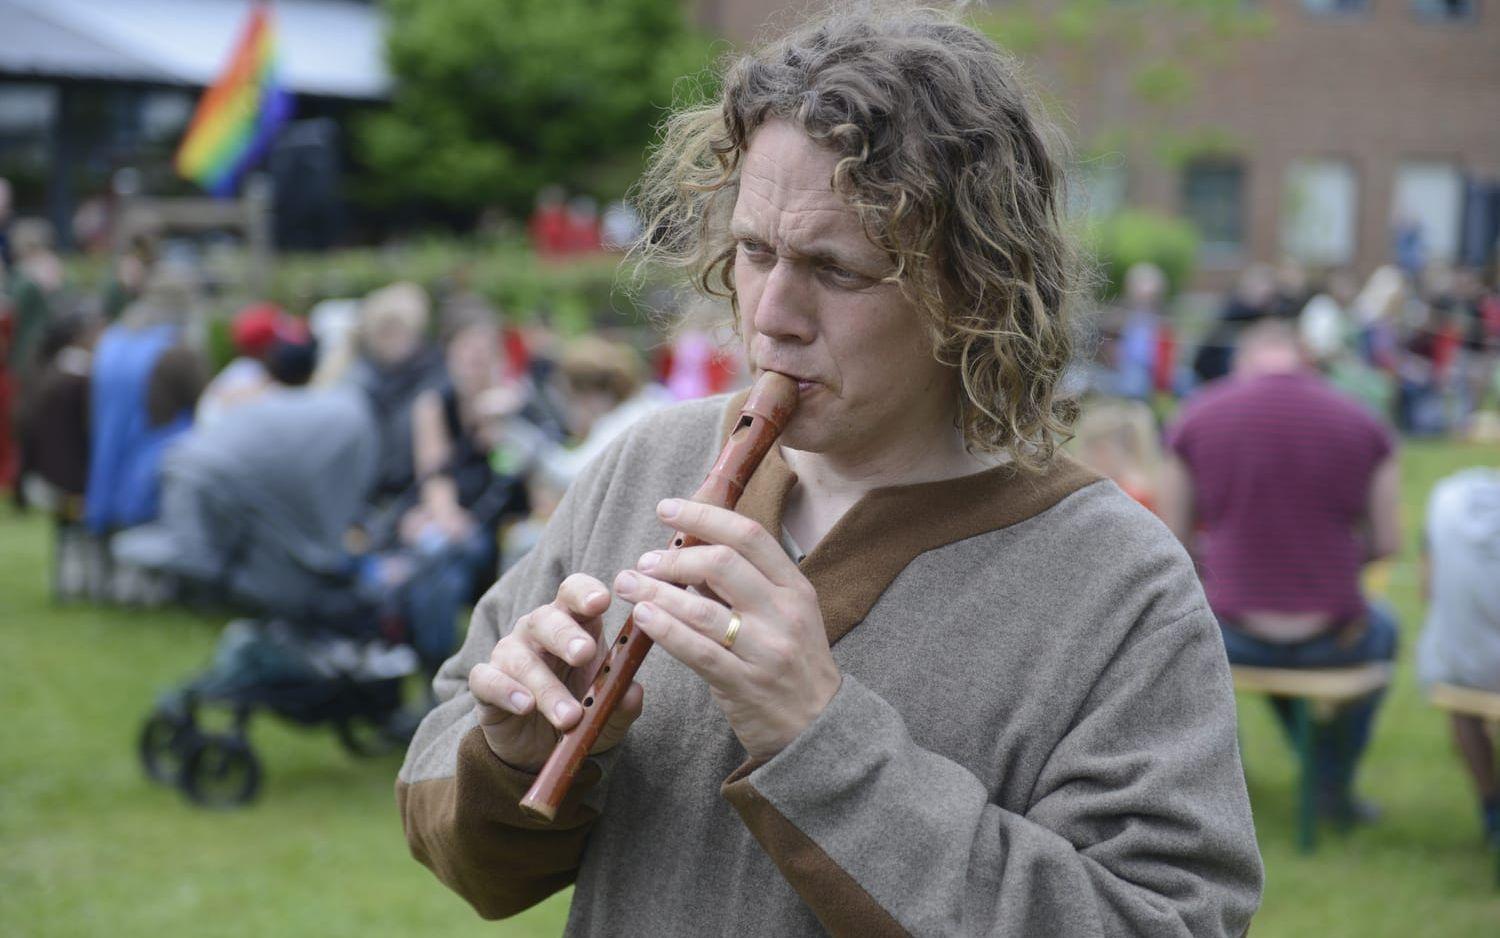 Henri Rundin från gruppen Bockfot låter flöjten sprida skön medeltida stämning i parken.